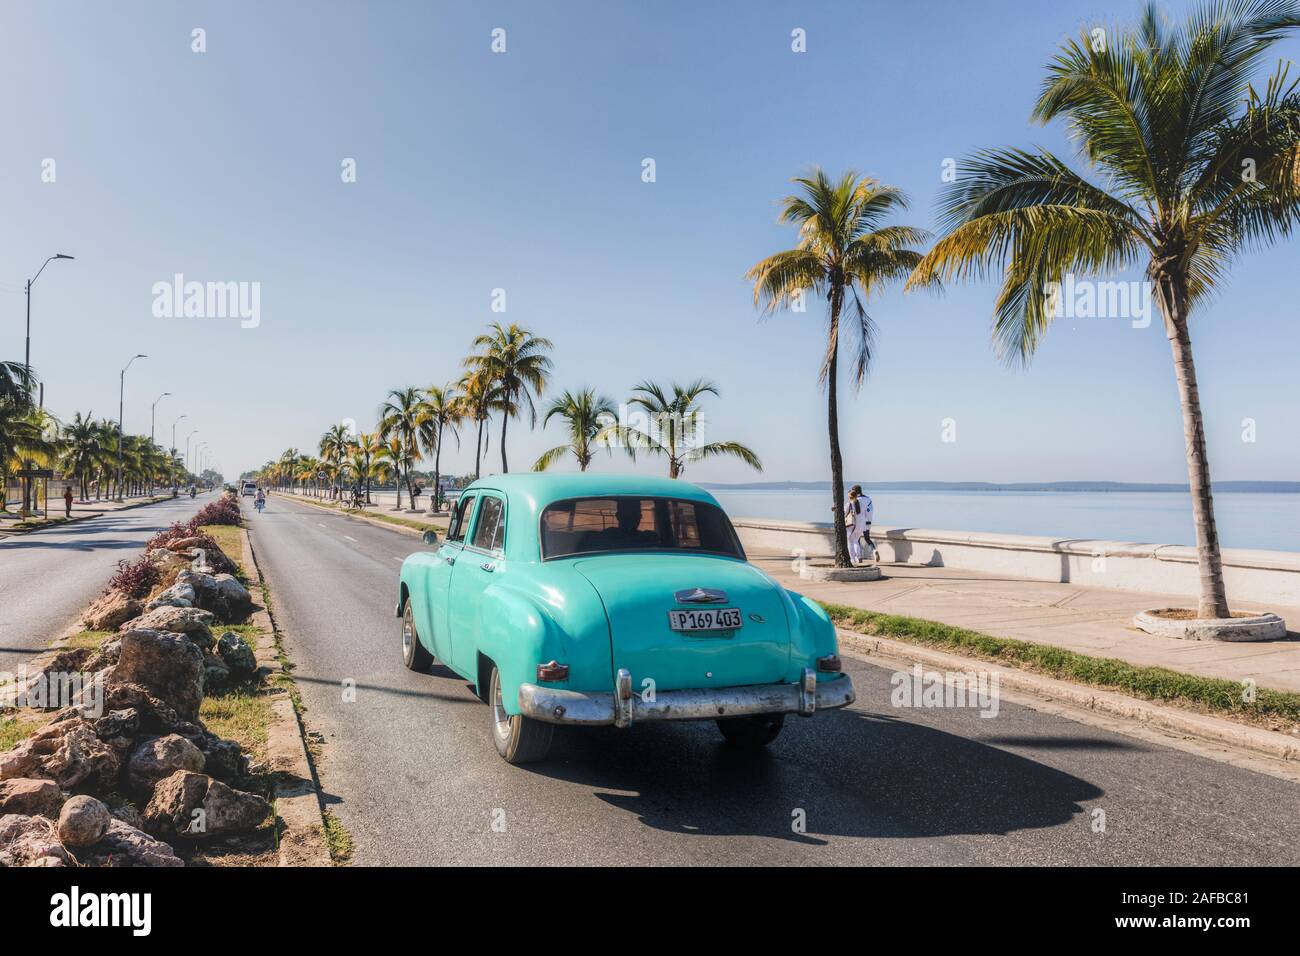 Cienfuegos, Cuba, North America Stock Photo